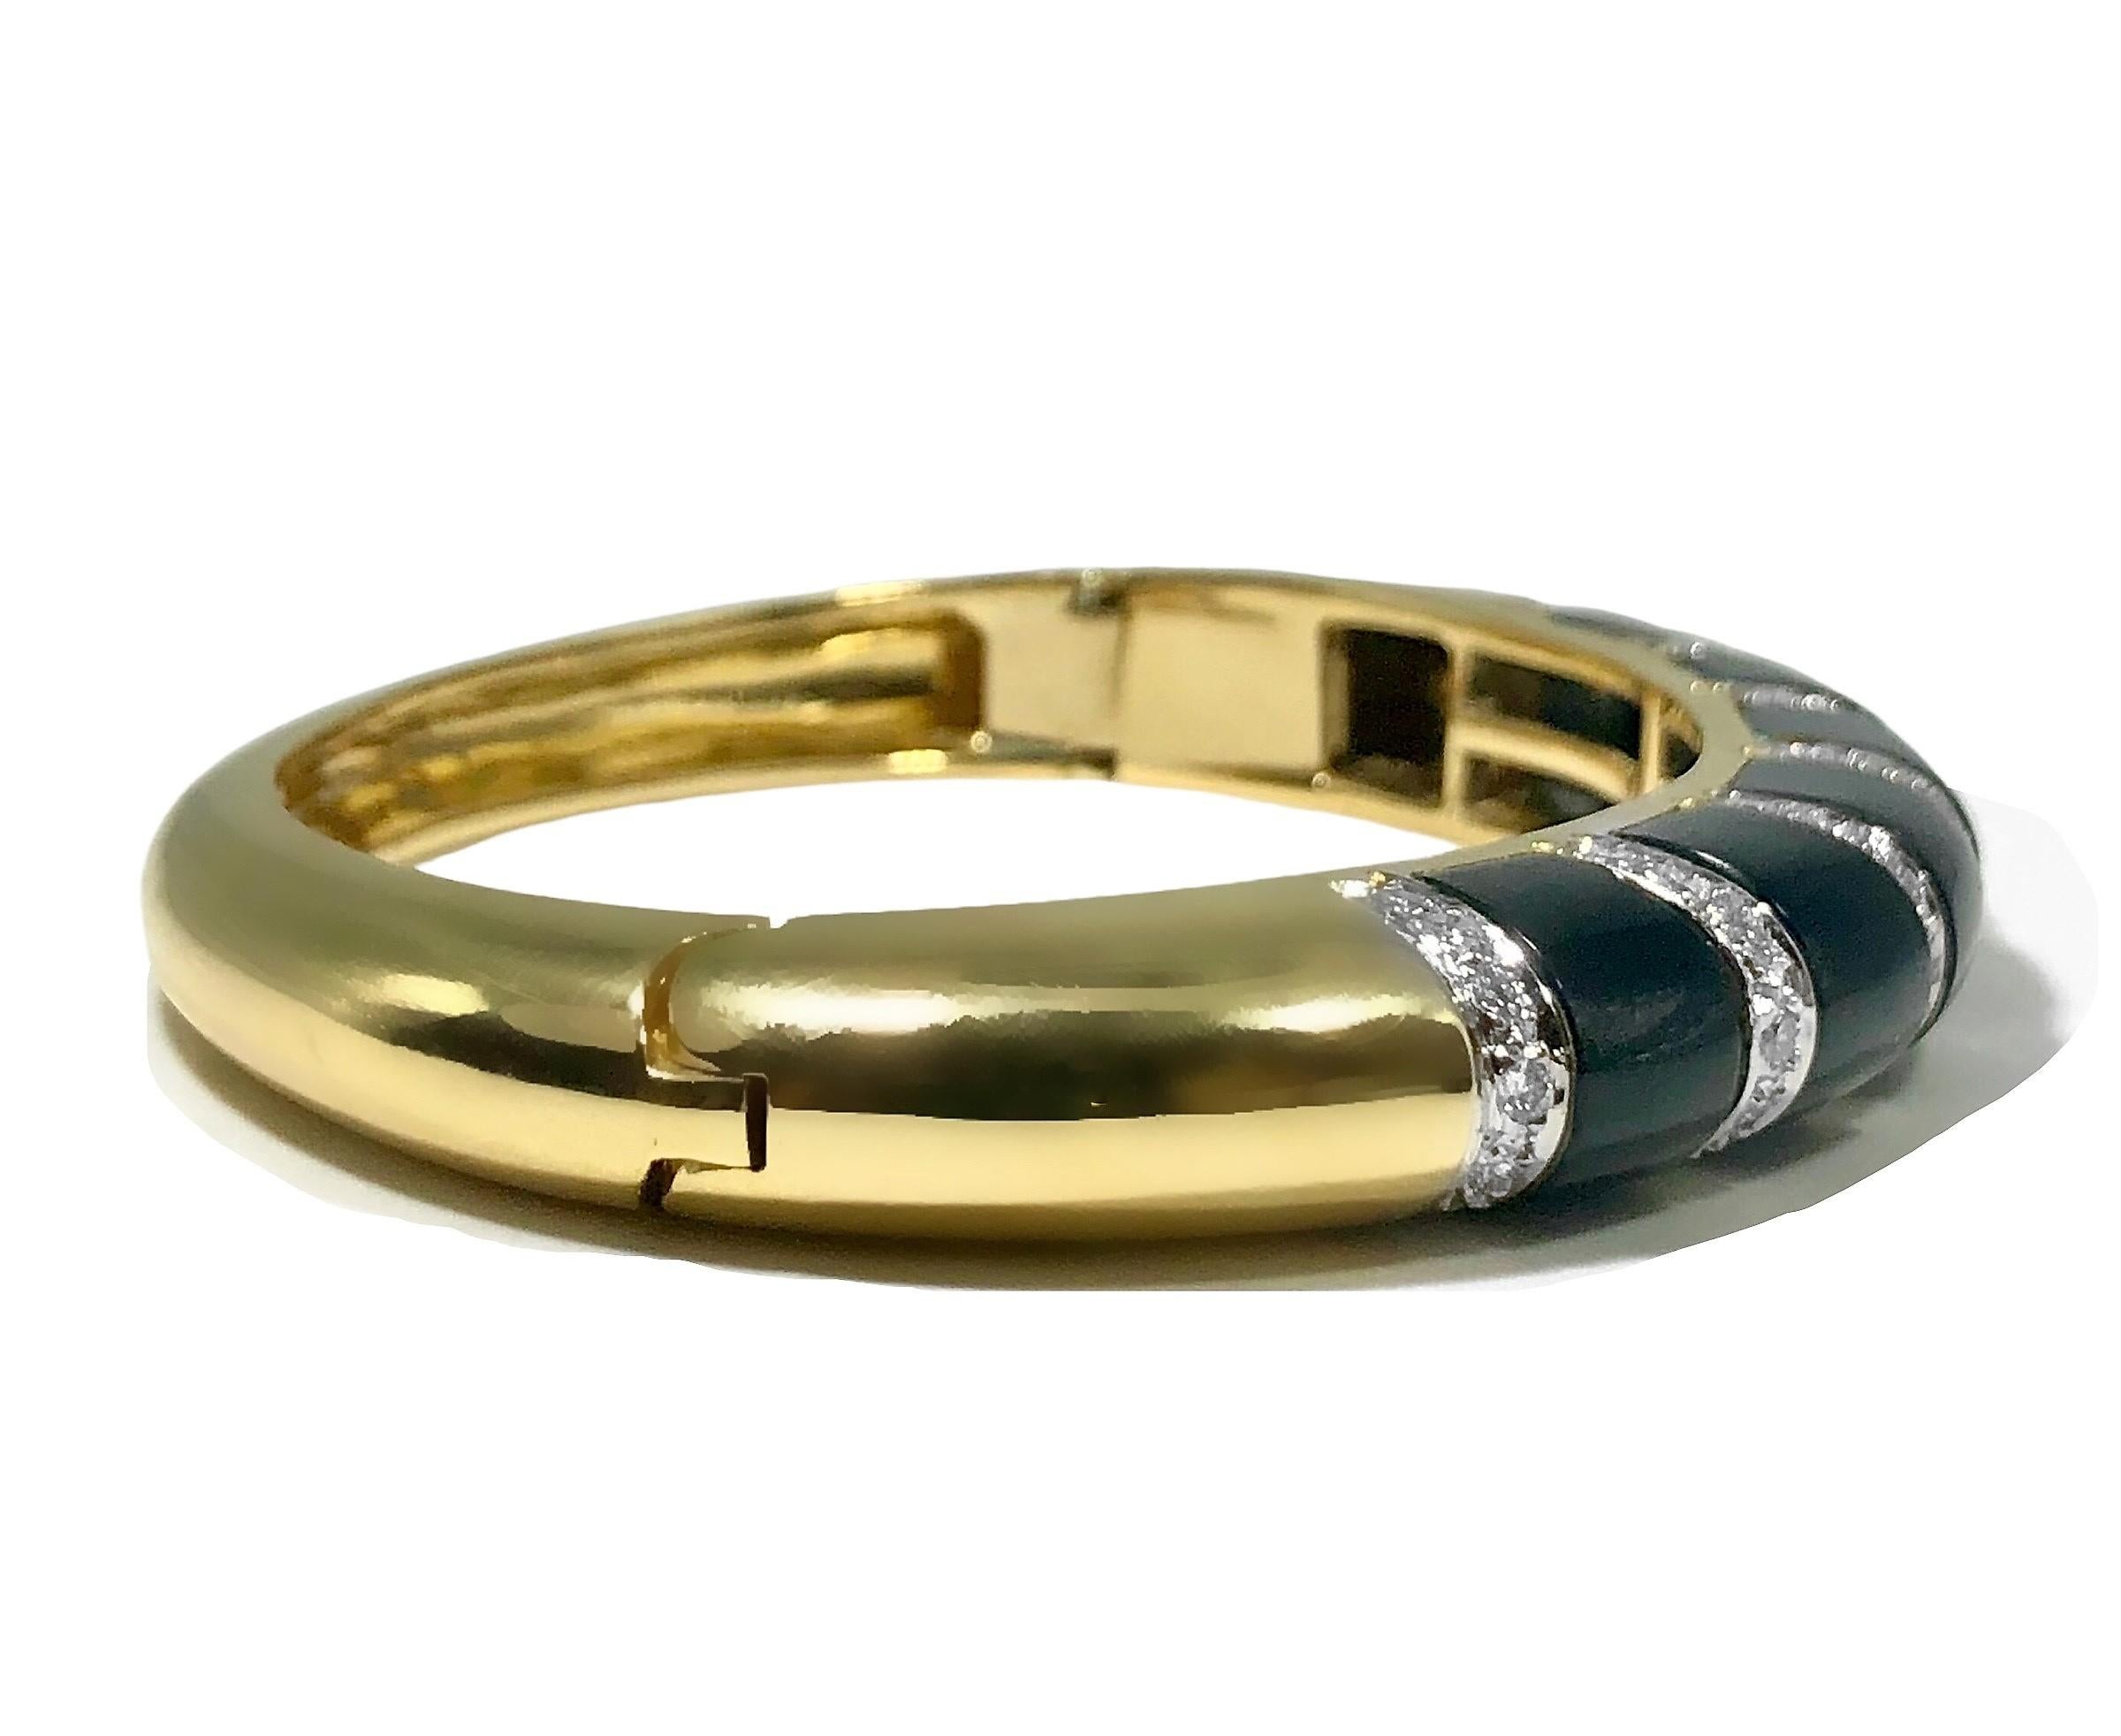 Modern Elegant and Iconic 1970's Bombe Black Onyx and Diamond 18K Gold Bangle Bracelet